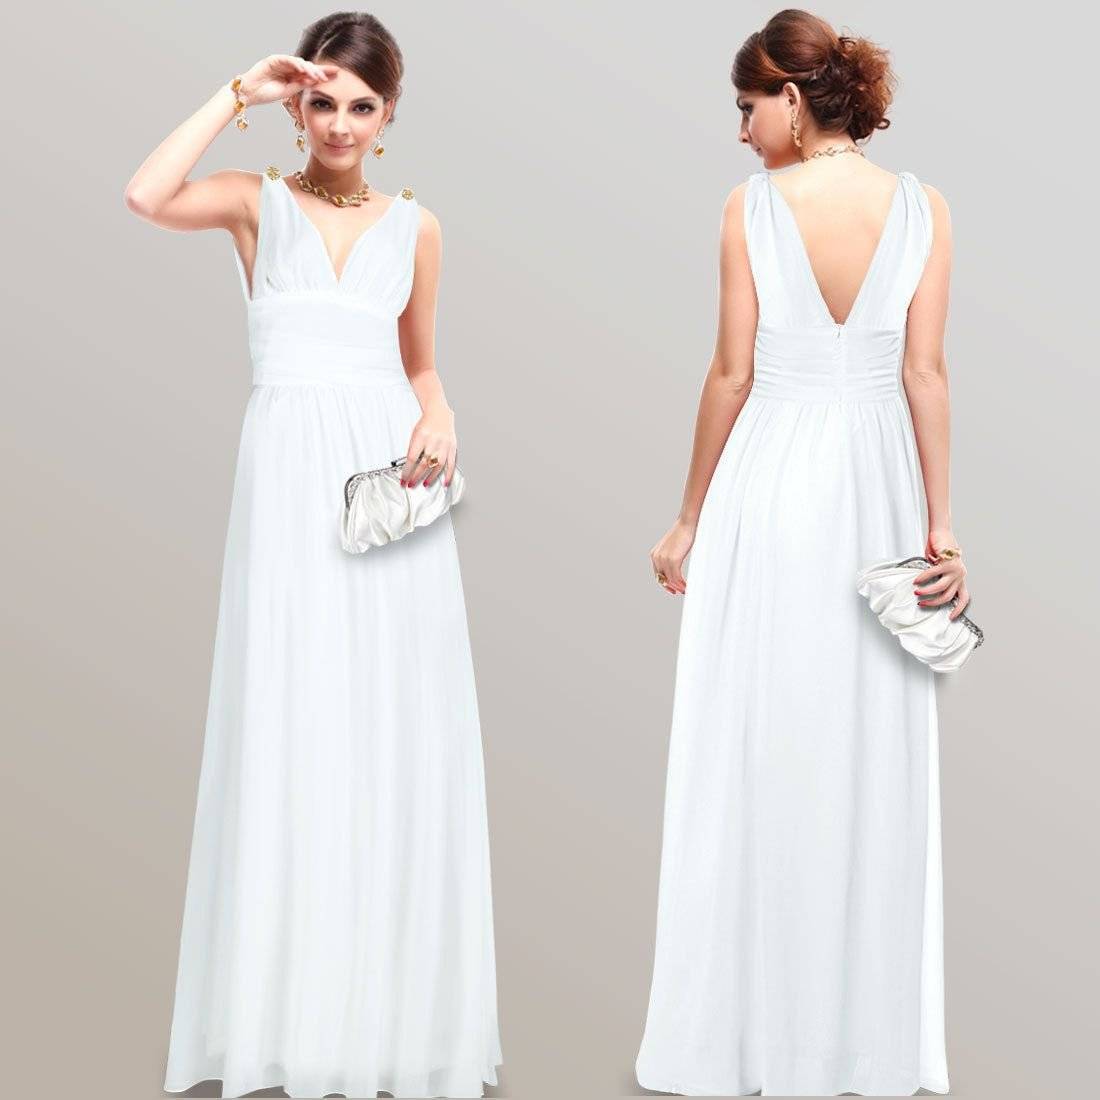 Греческое платье: стильные советы куда носить и чем дополнить образ